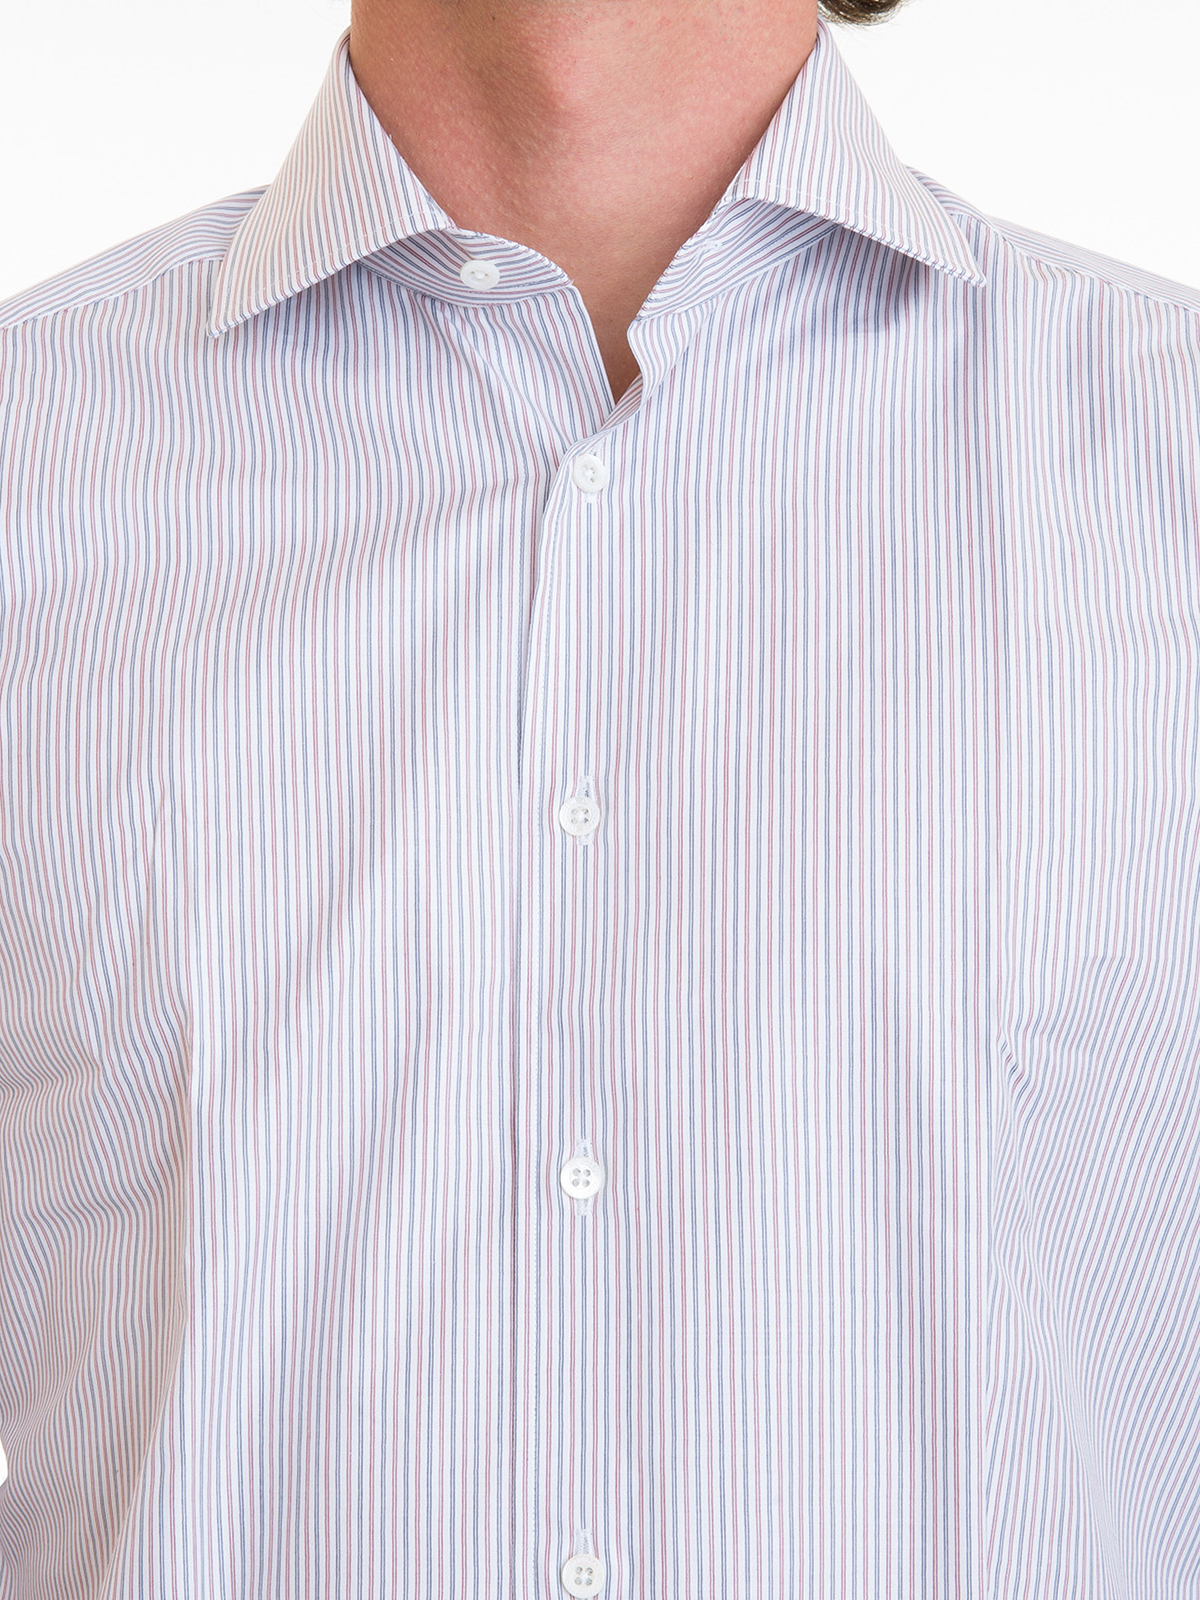 Shirts Corneliani - Striped cotton classic shirt - 211134234P100